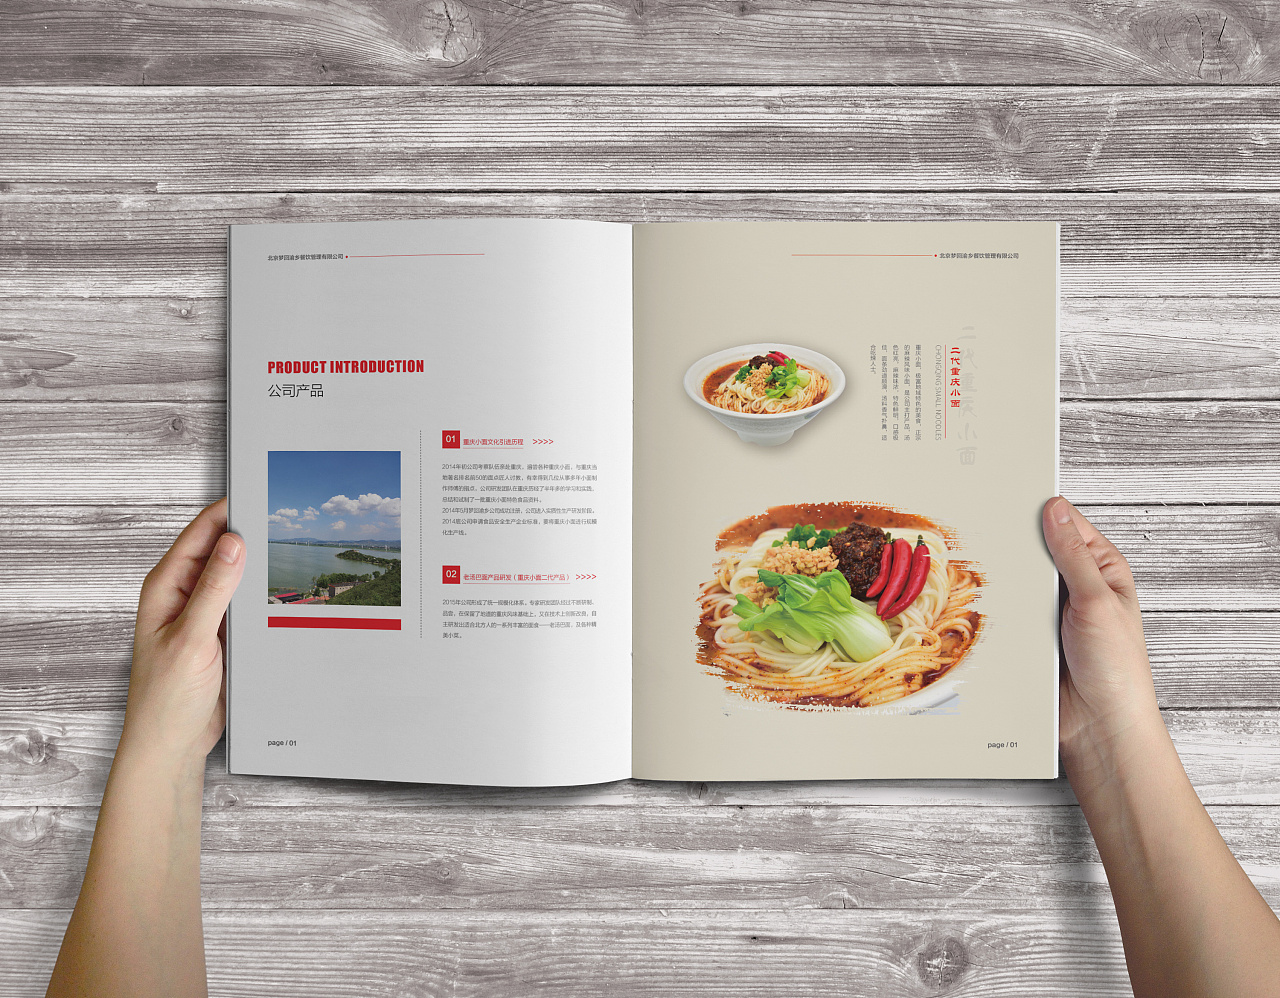 餐饮画册制作印刷厂家,食品画册设计制作,餐饮宣传画册印刷制作